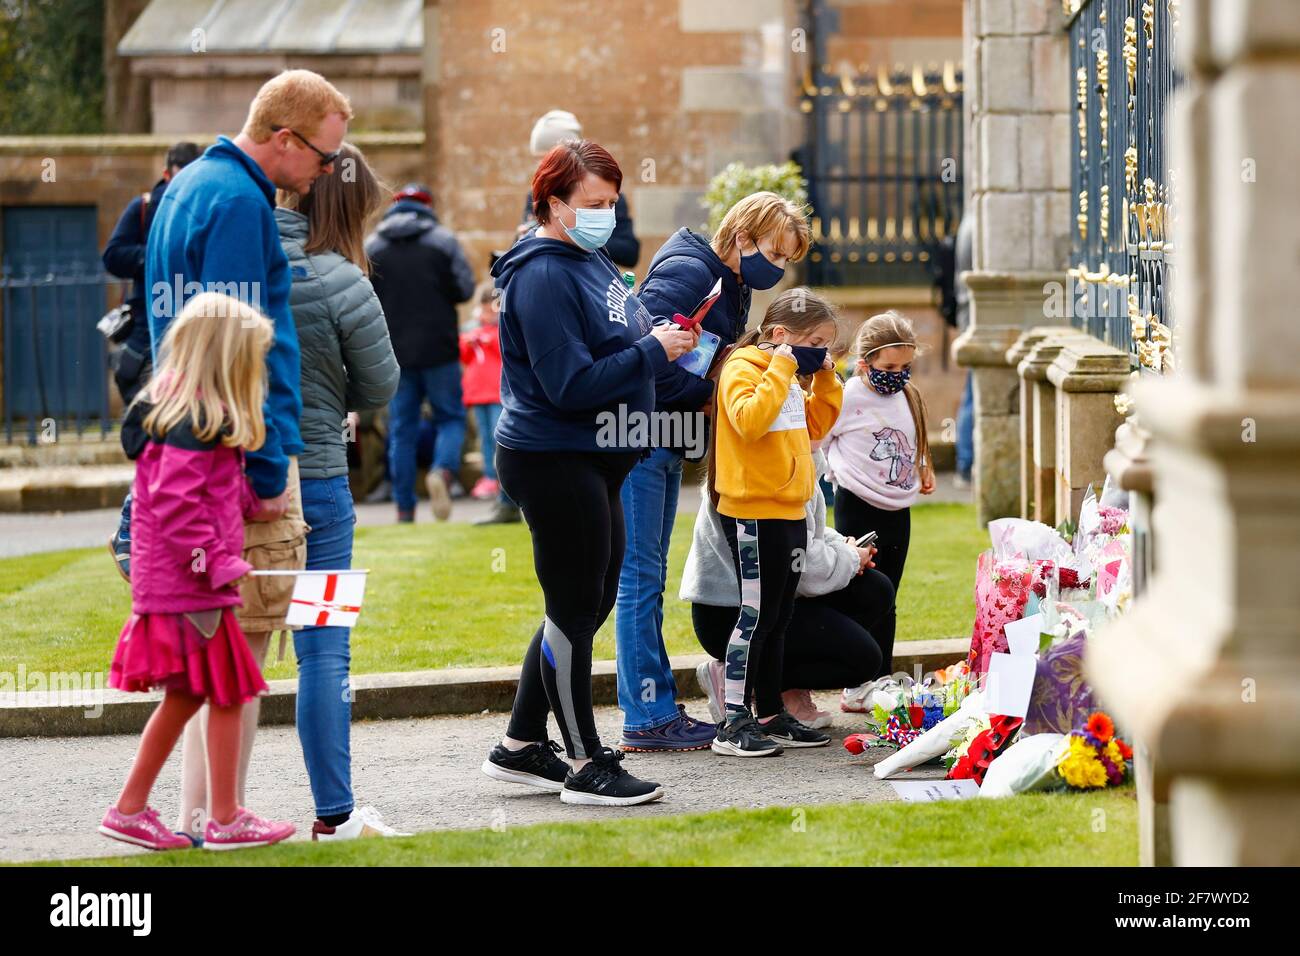 La gente depositó flores en el Castillo de Hillsborough después de que el Príncipe Felipe de Gran Bretaña, esposo de la Reina Isabel, murió a la edad de 99 años, en Hillsborough, Irlanda del Norte, 10 de abril de 2021. REUTERS/Jason Cairnduff Foto de stock